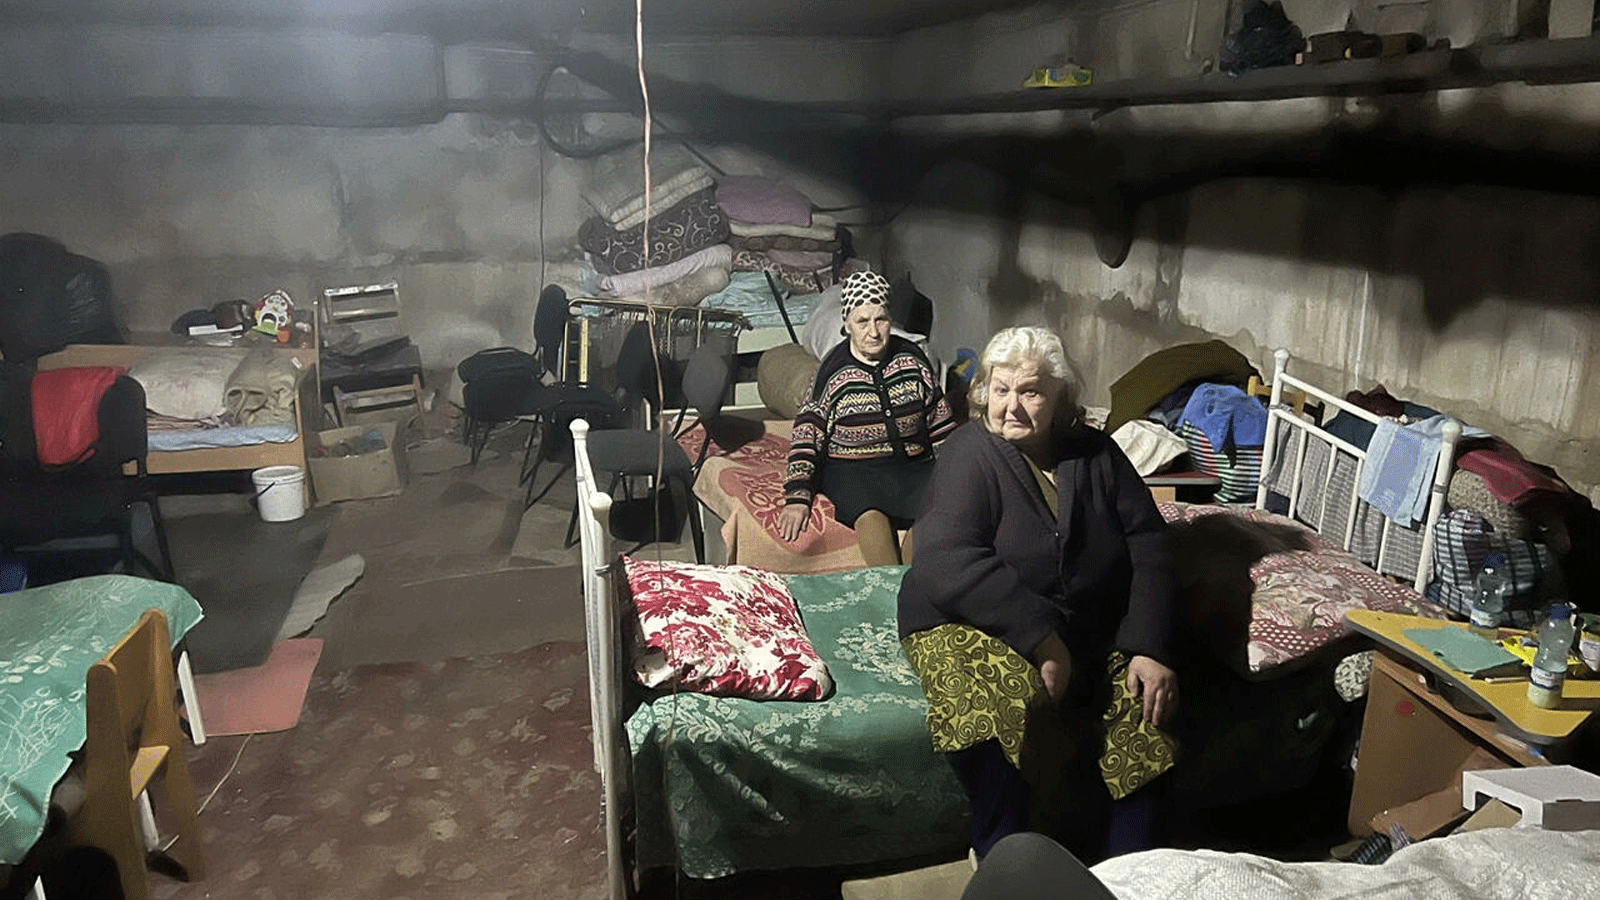 الأسرة مرتبة في ثلاث غرف كبيرة حيث معظم السكان من النساء المسنات في ملجأ تحت الأرض في قرية كوتوزيفكا باتريك فورت.